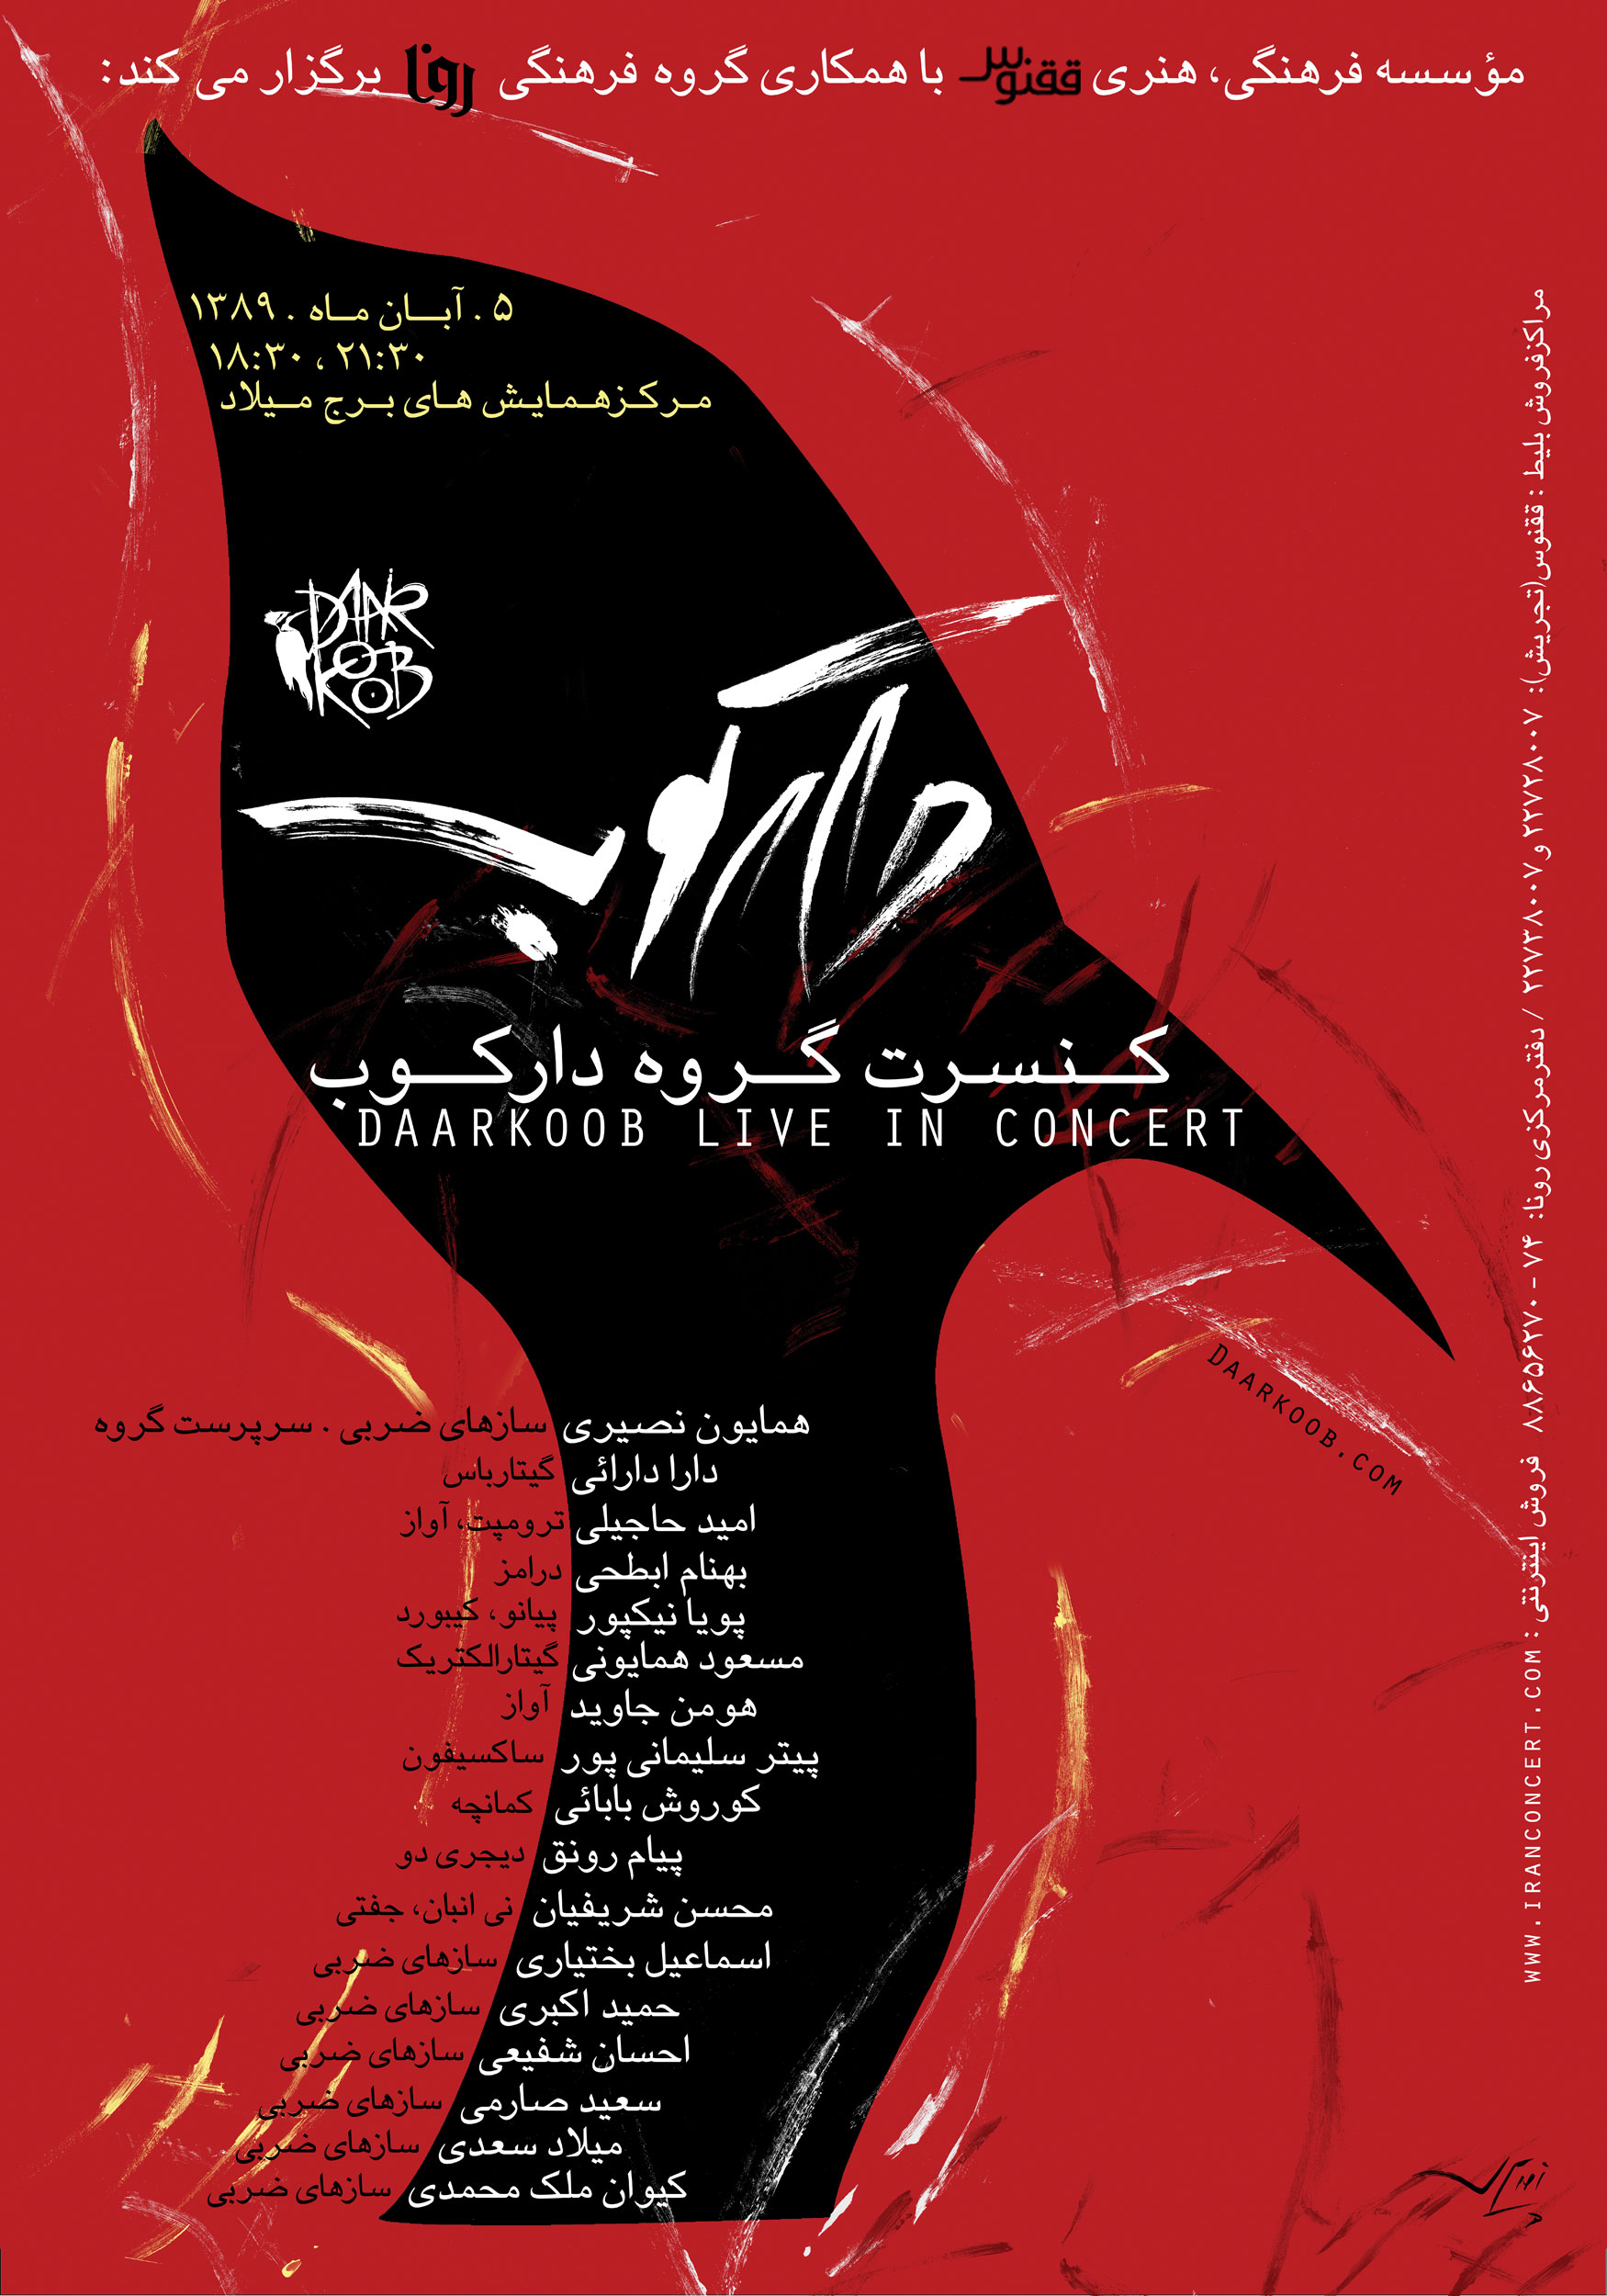 پوستر کنسرت گروه موسیقی دارکوب - آبان 1389